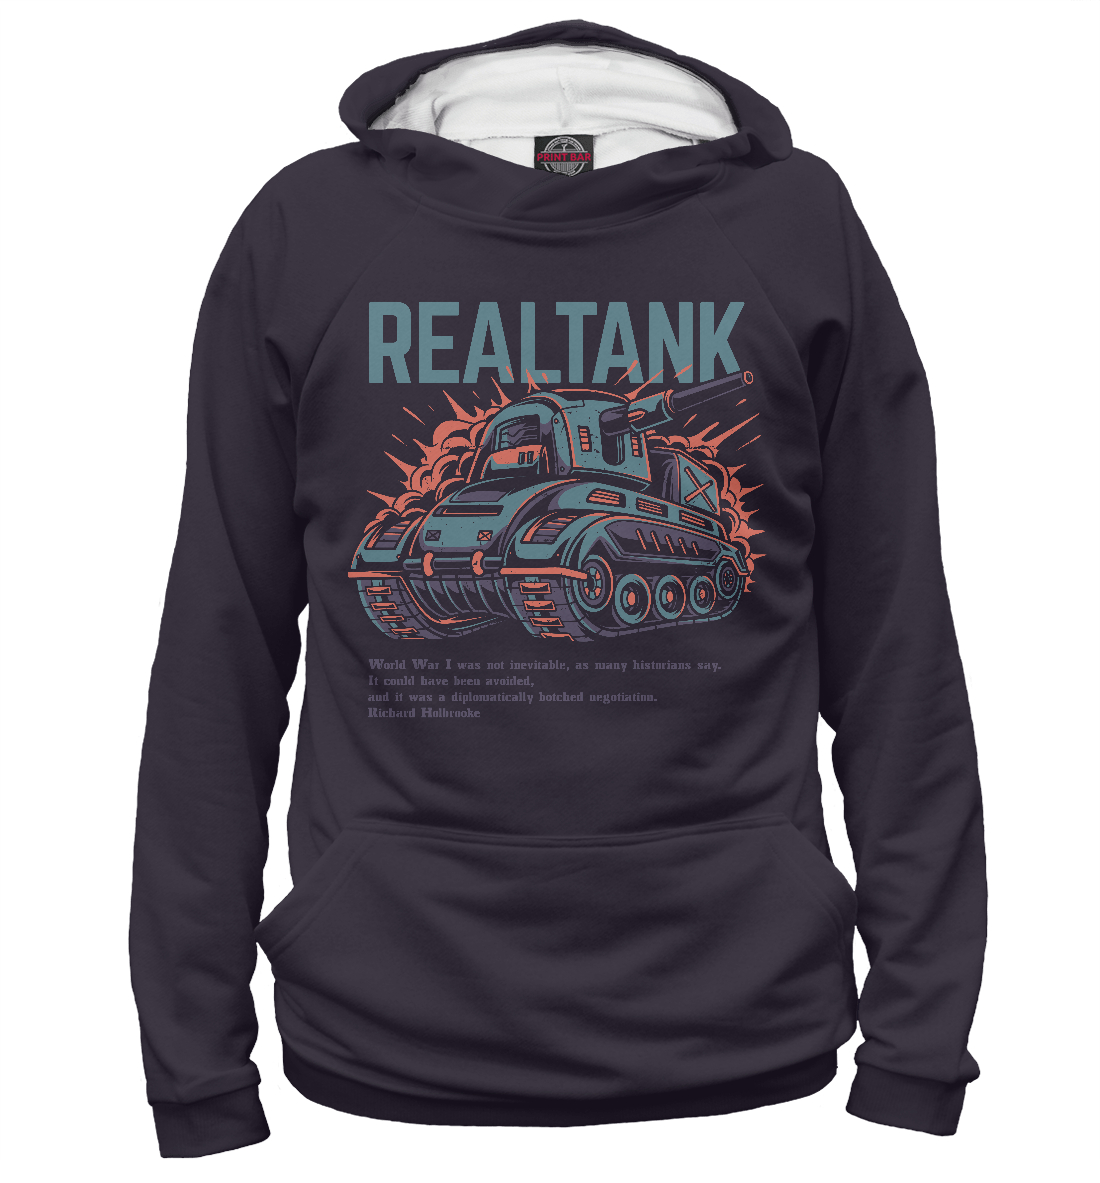 

Real Tank